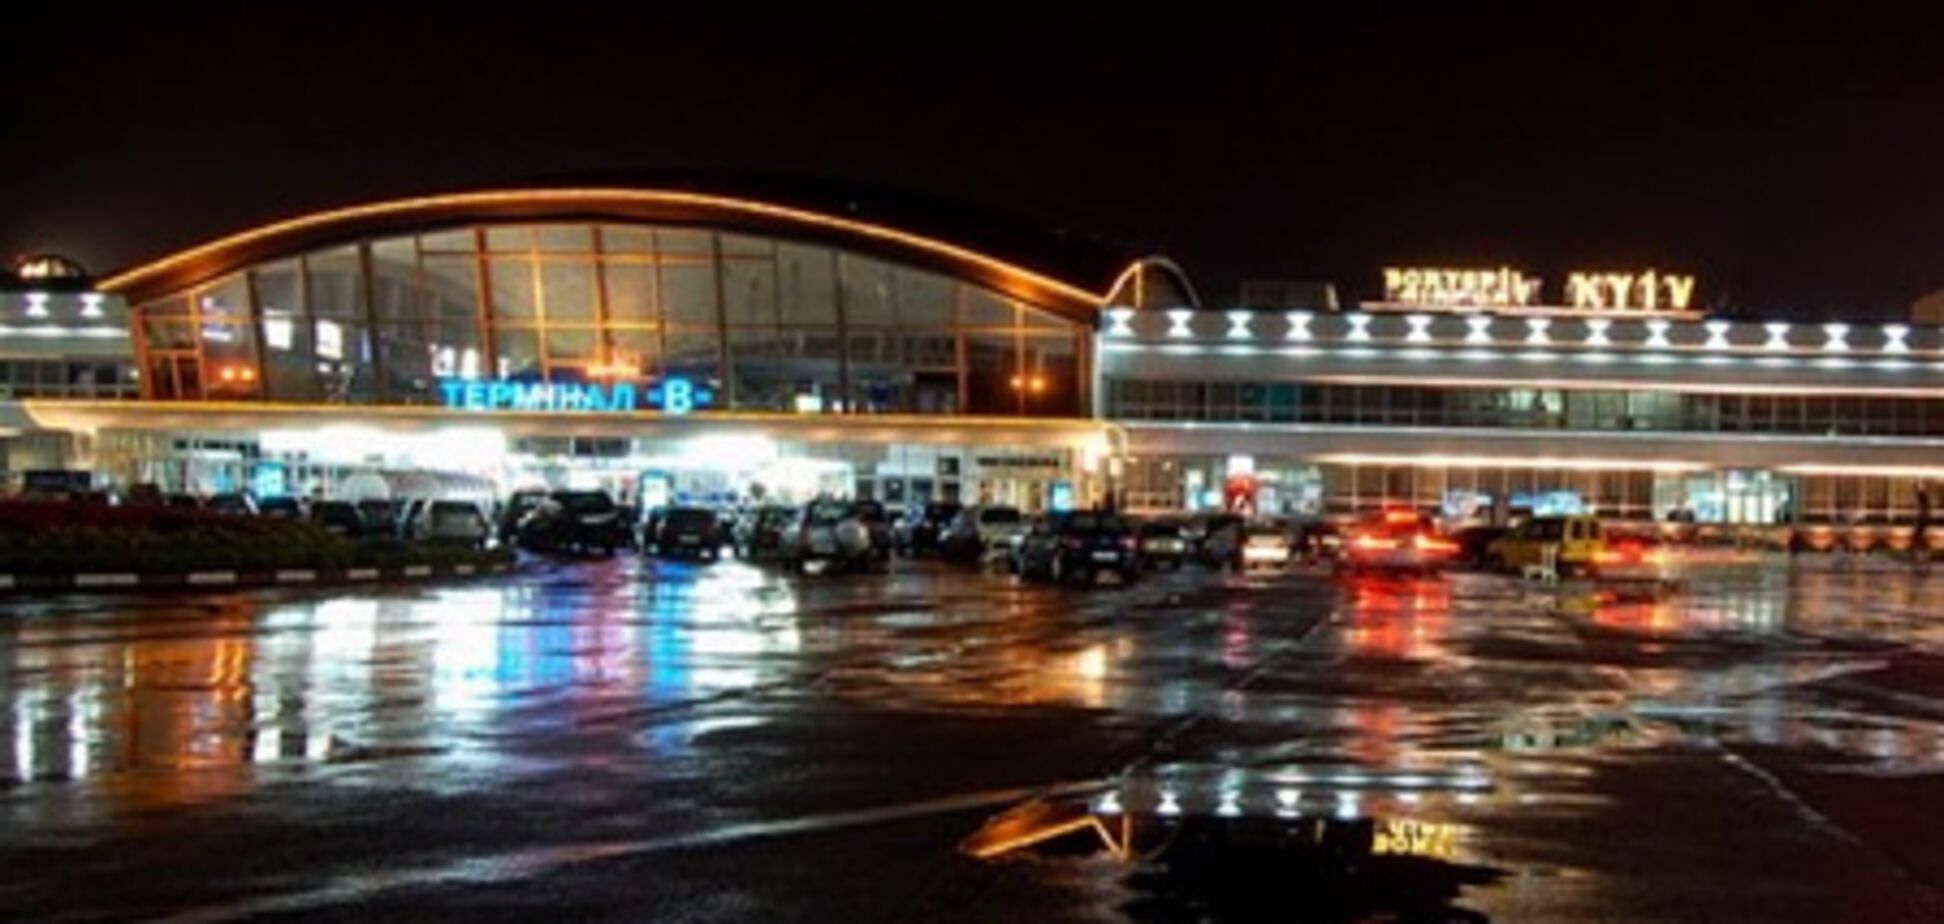 Аэропорт 'Борисполь' в 2012 году обслужил 8,5 млн пассажиров